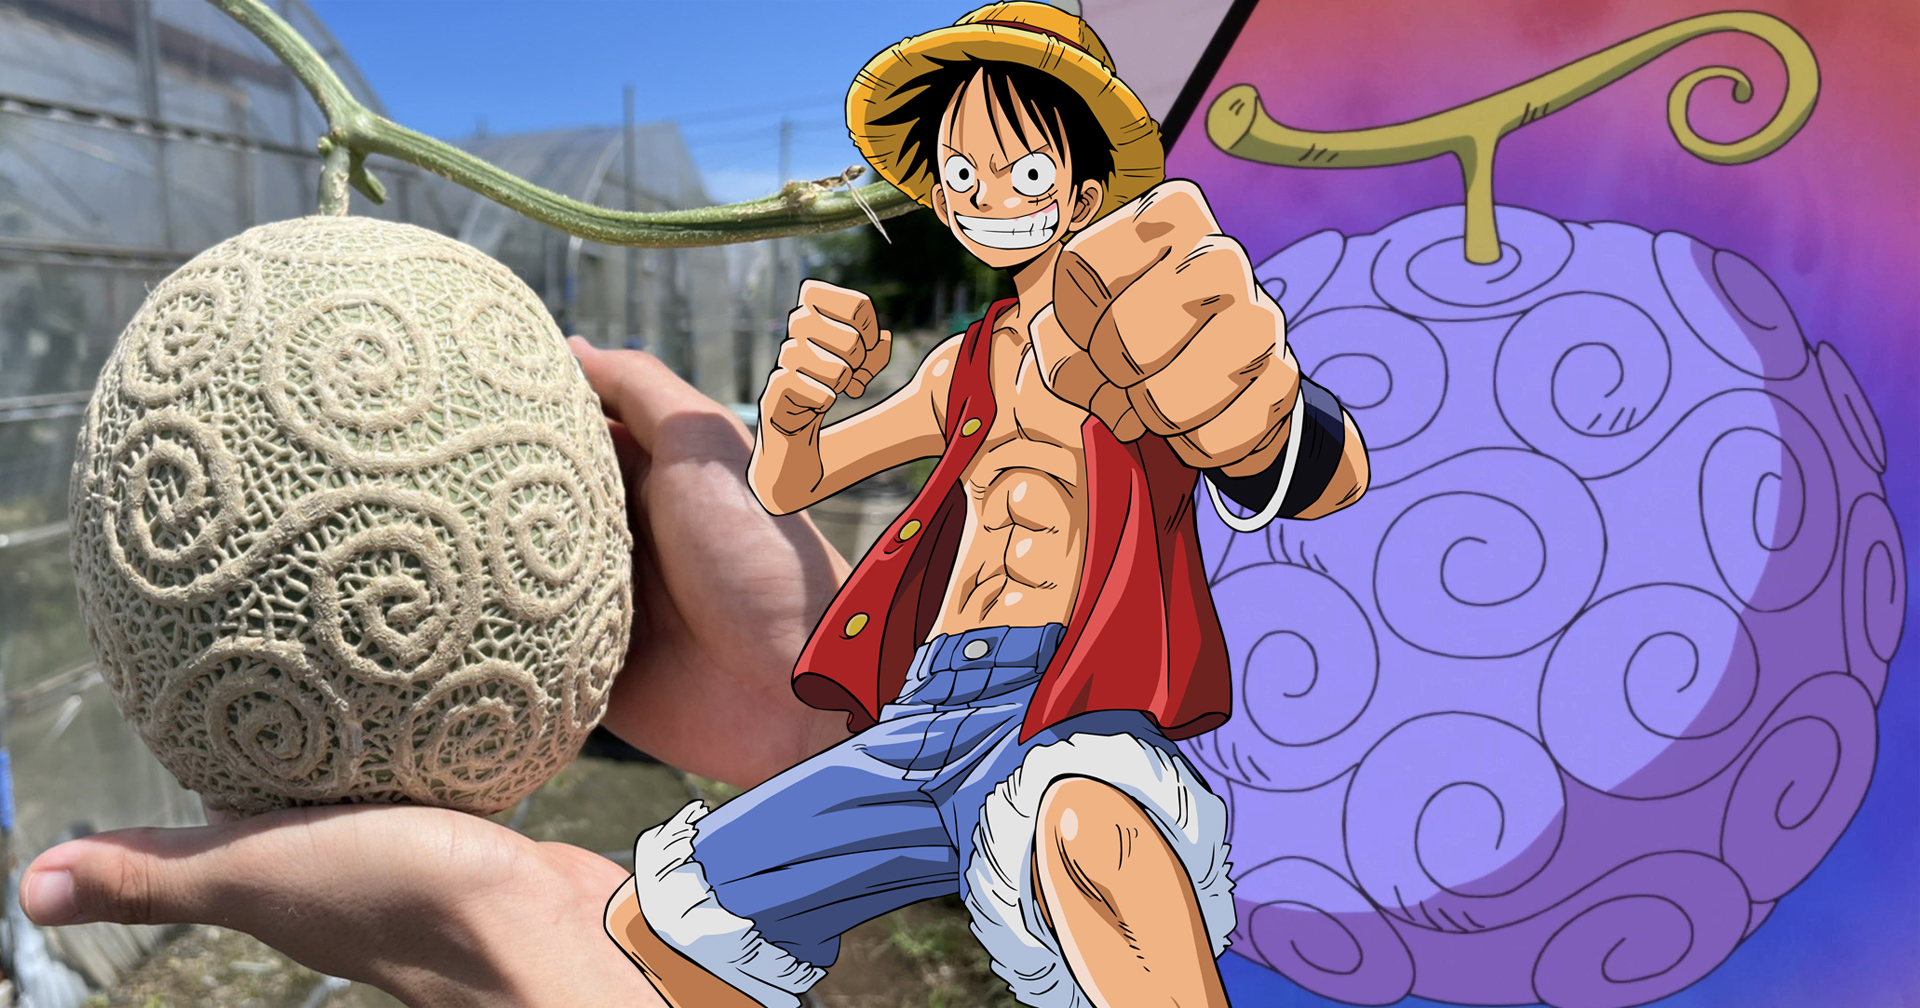 เด็ก ม. ปลายญี่ปุ่น ปลูกเมลอนคล้ายผลปีศาจใน ‘One Piece’ ก่อนถูกขอซื้อราคา 128 ล้านบาท